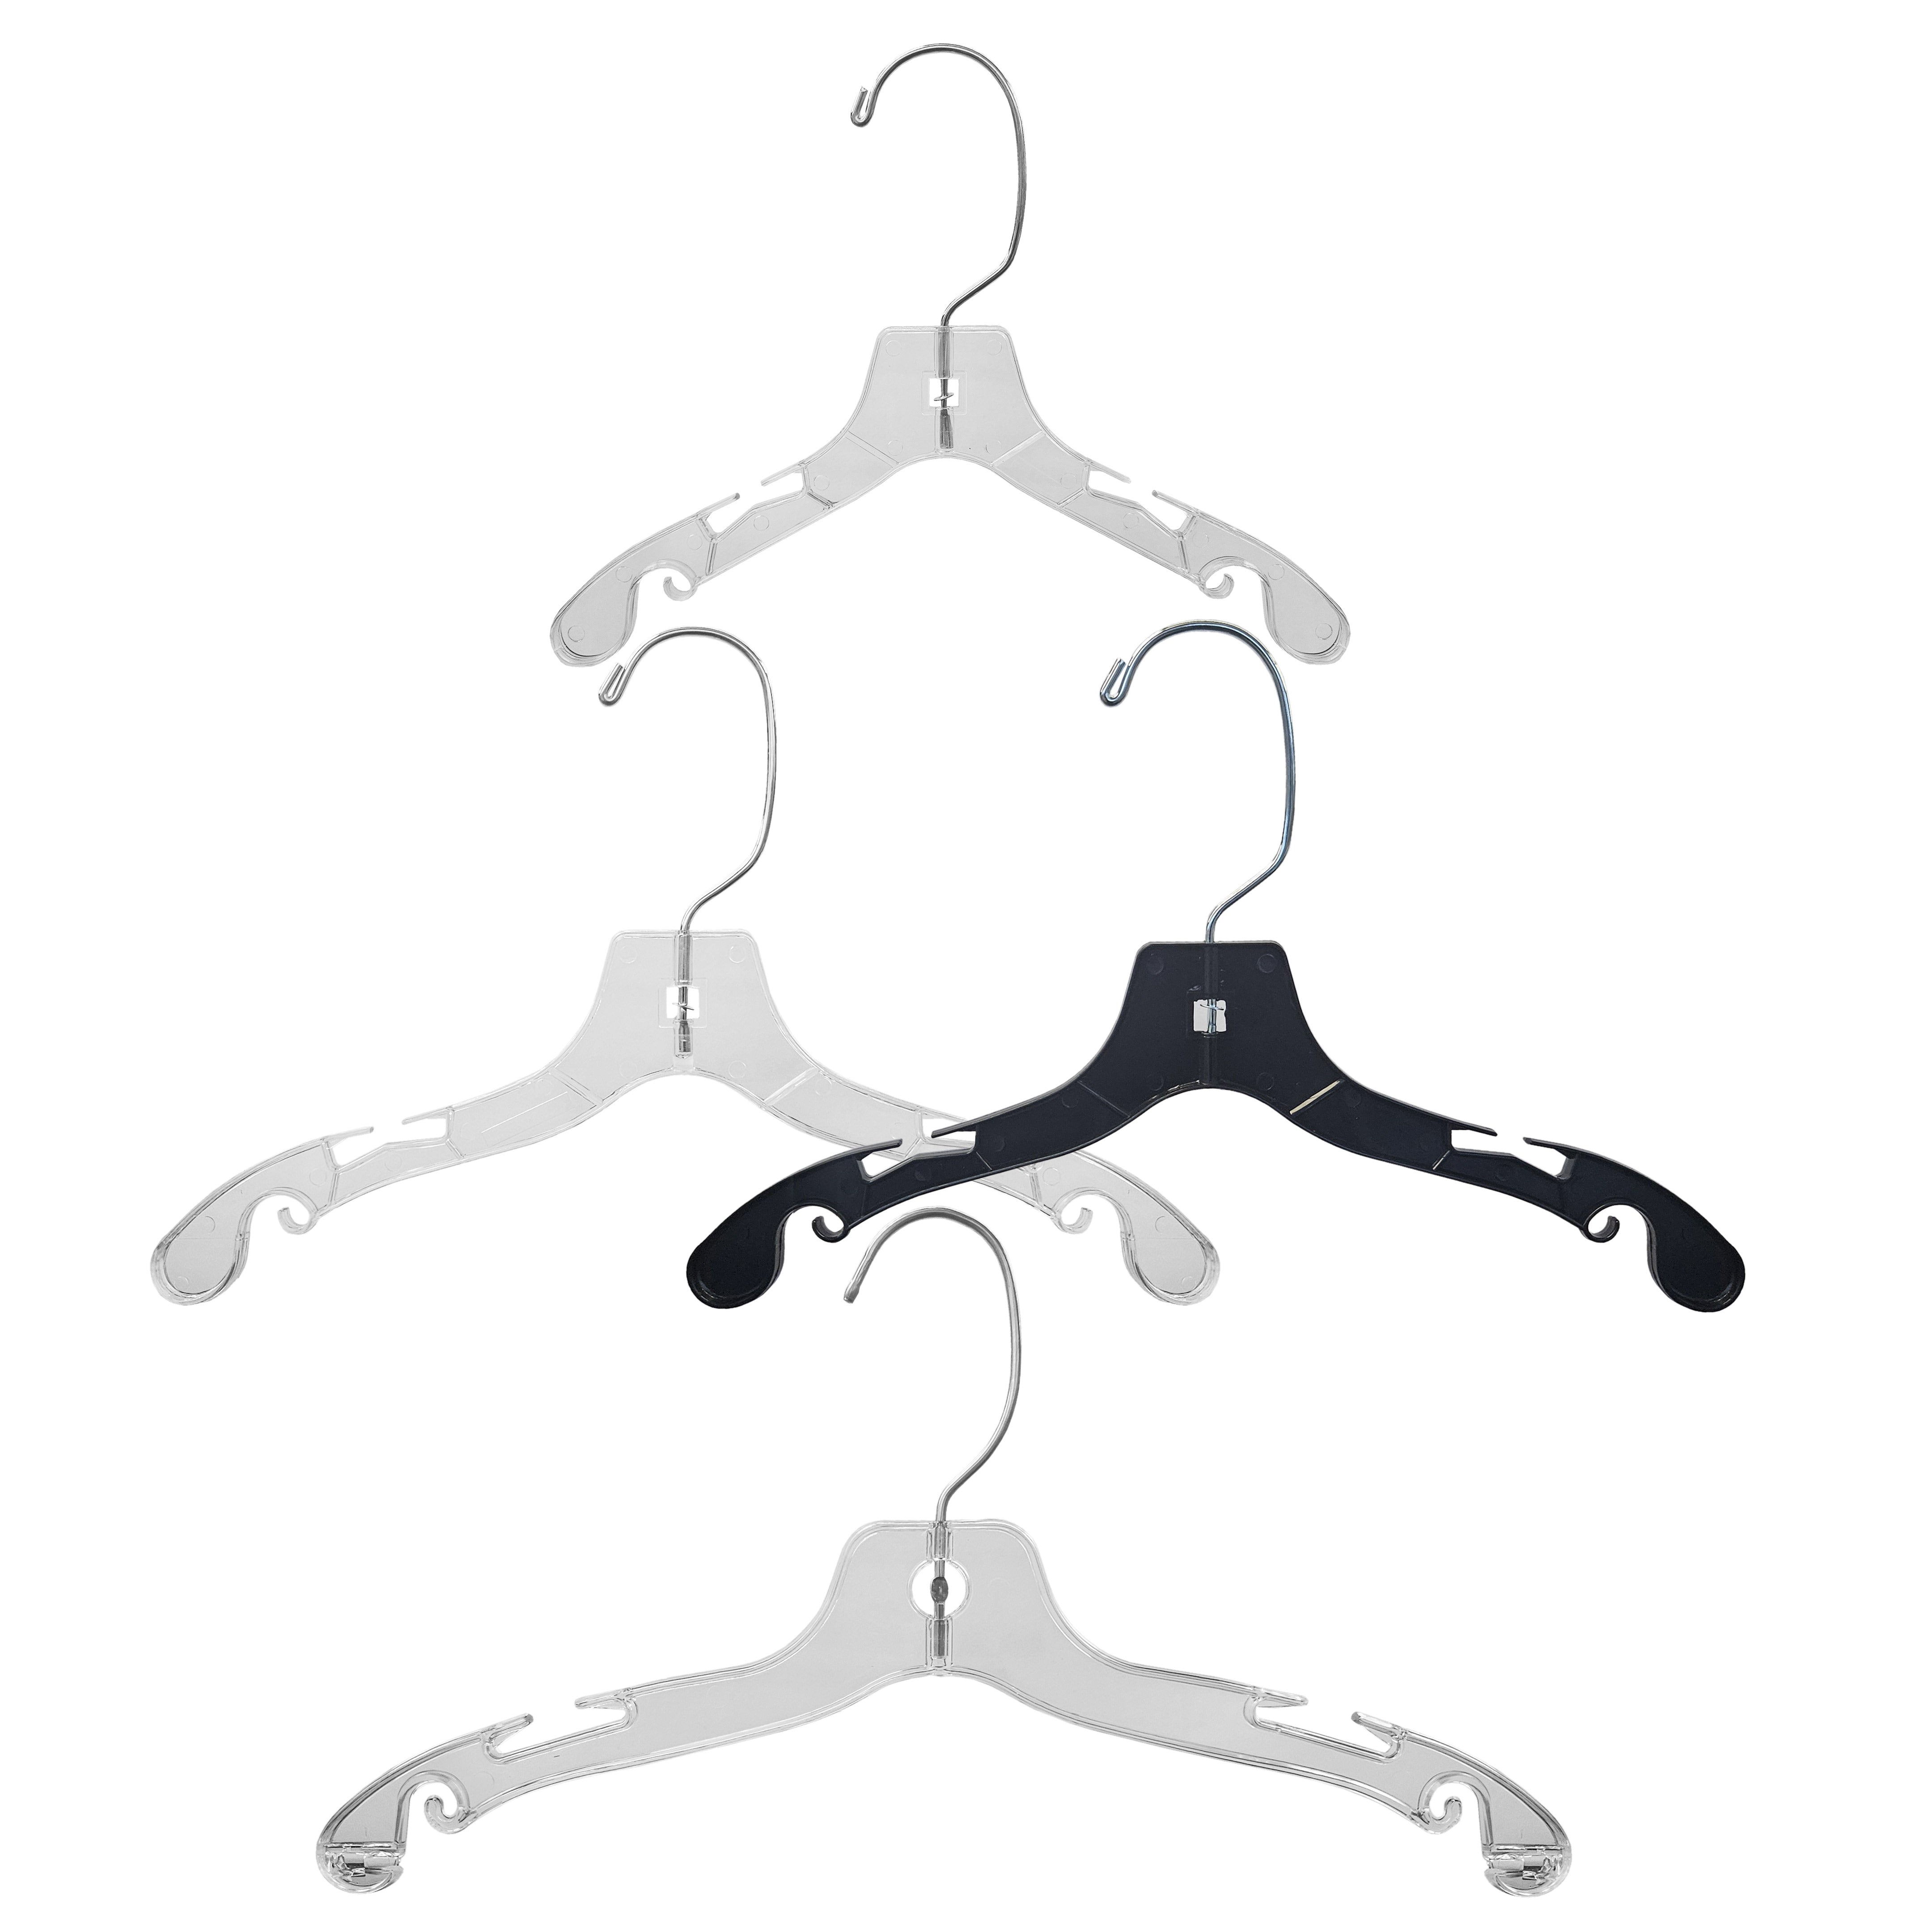 Children's Plastic Top Hangers | 100 Pk - Eddie's Hang-Up Display Ltd.